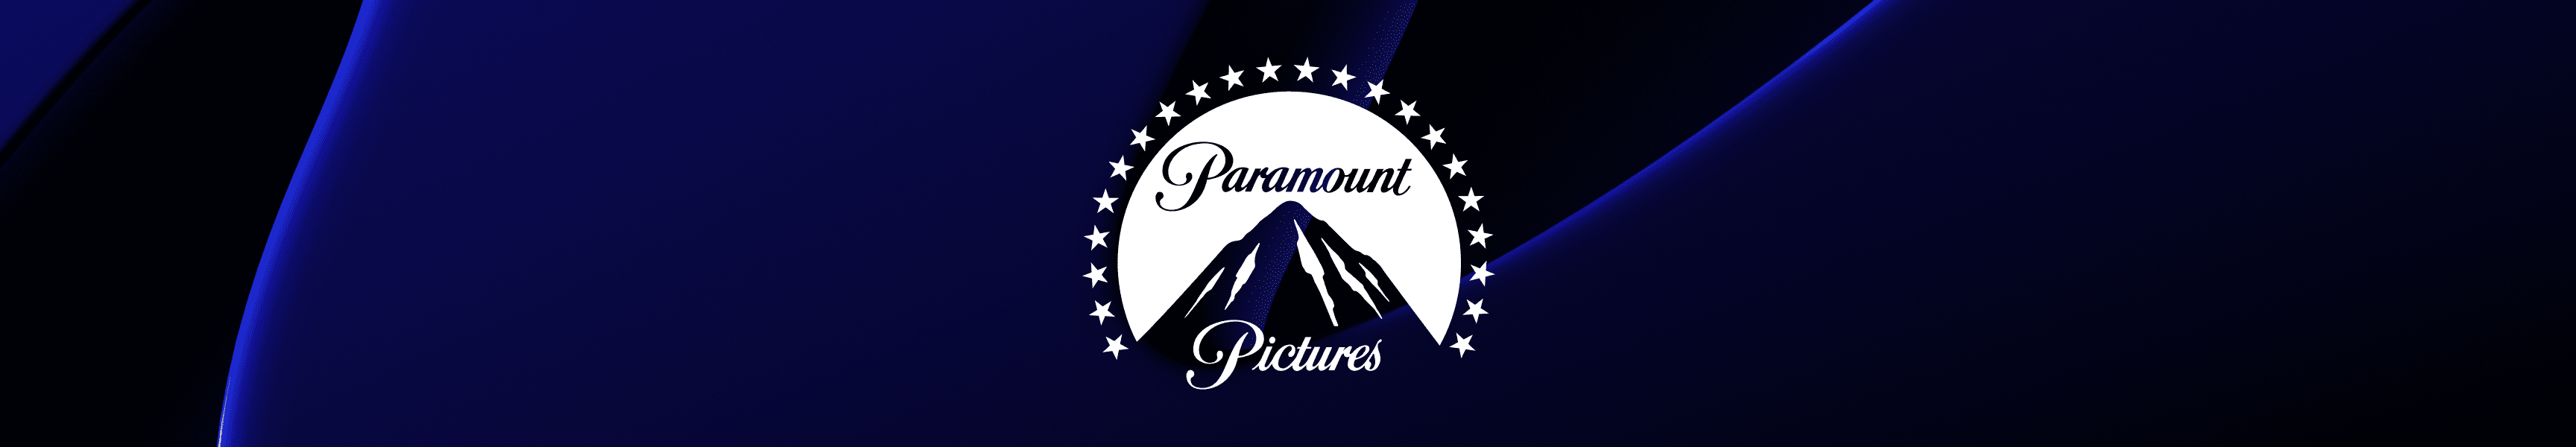 Paramount Pictures Bolsos y mochilas